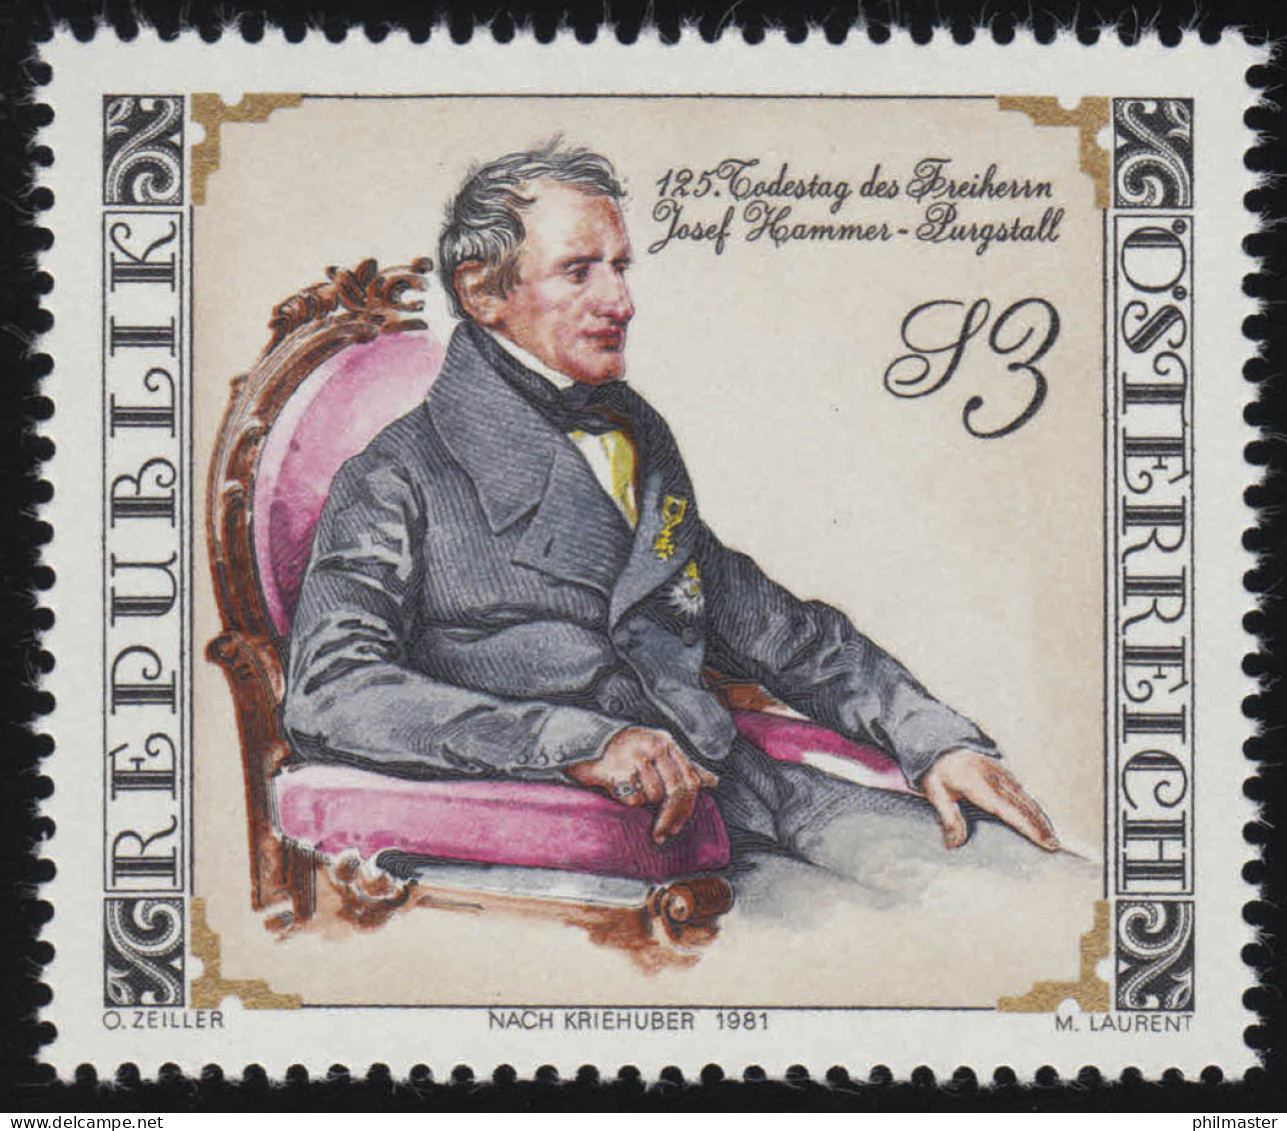 1689 125. Todestag, Josef Freiherr Von Hammer-Purgstall, Diplomat, 3 S ** - Unused Stamps